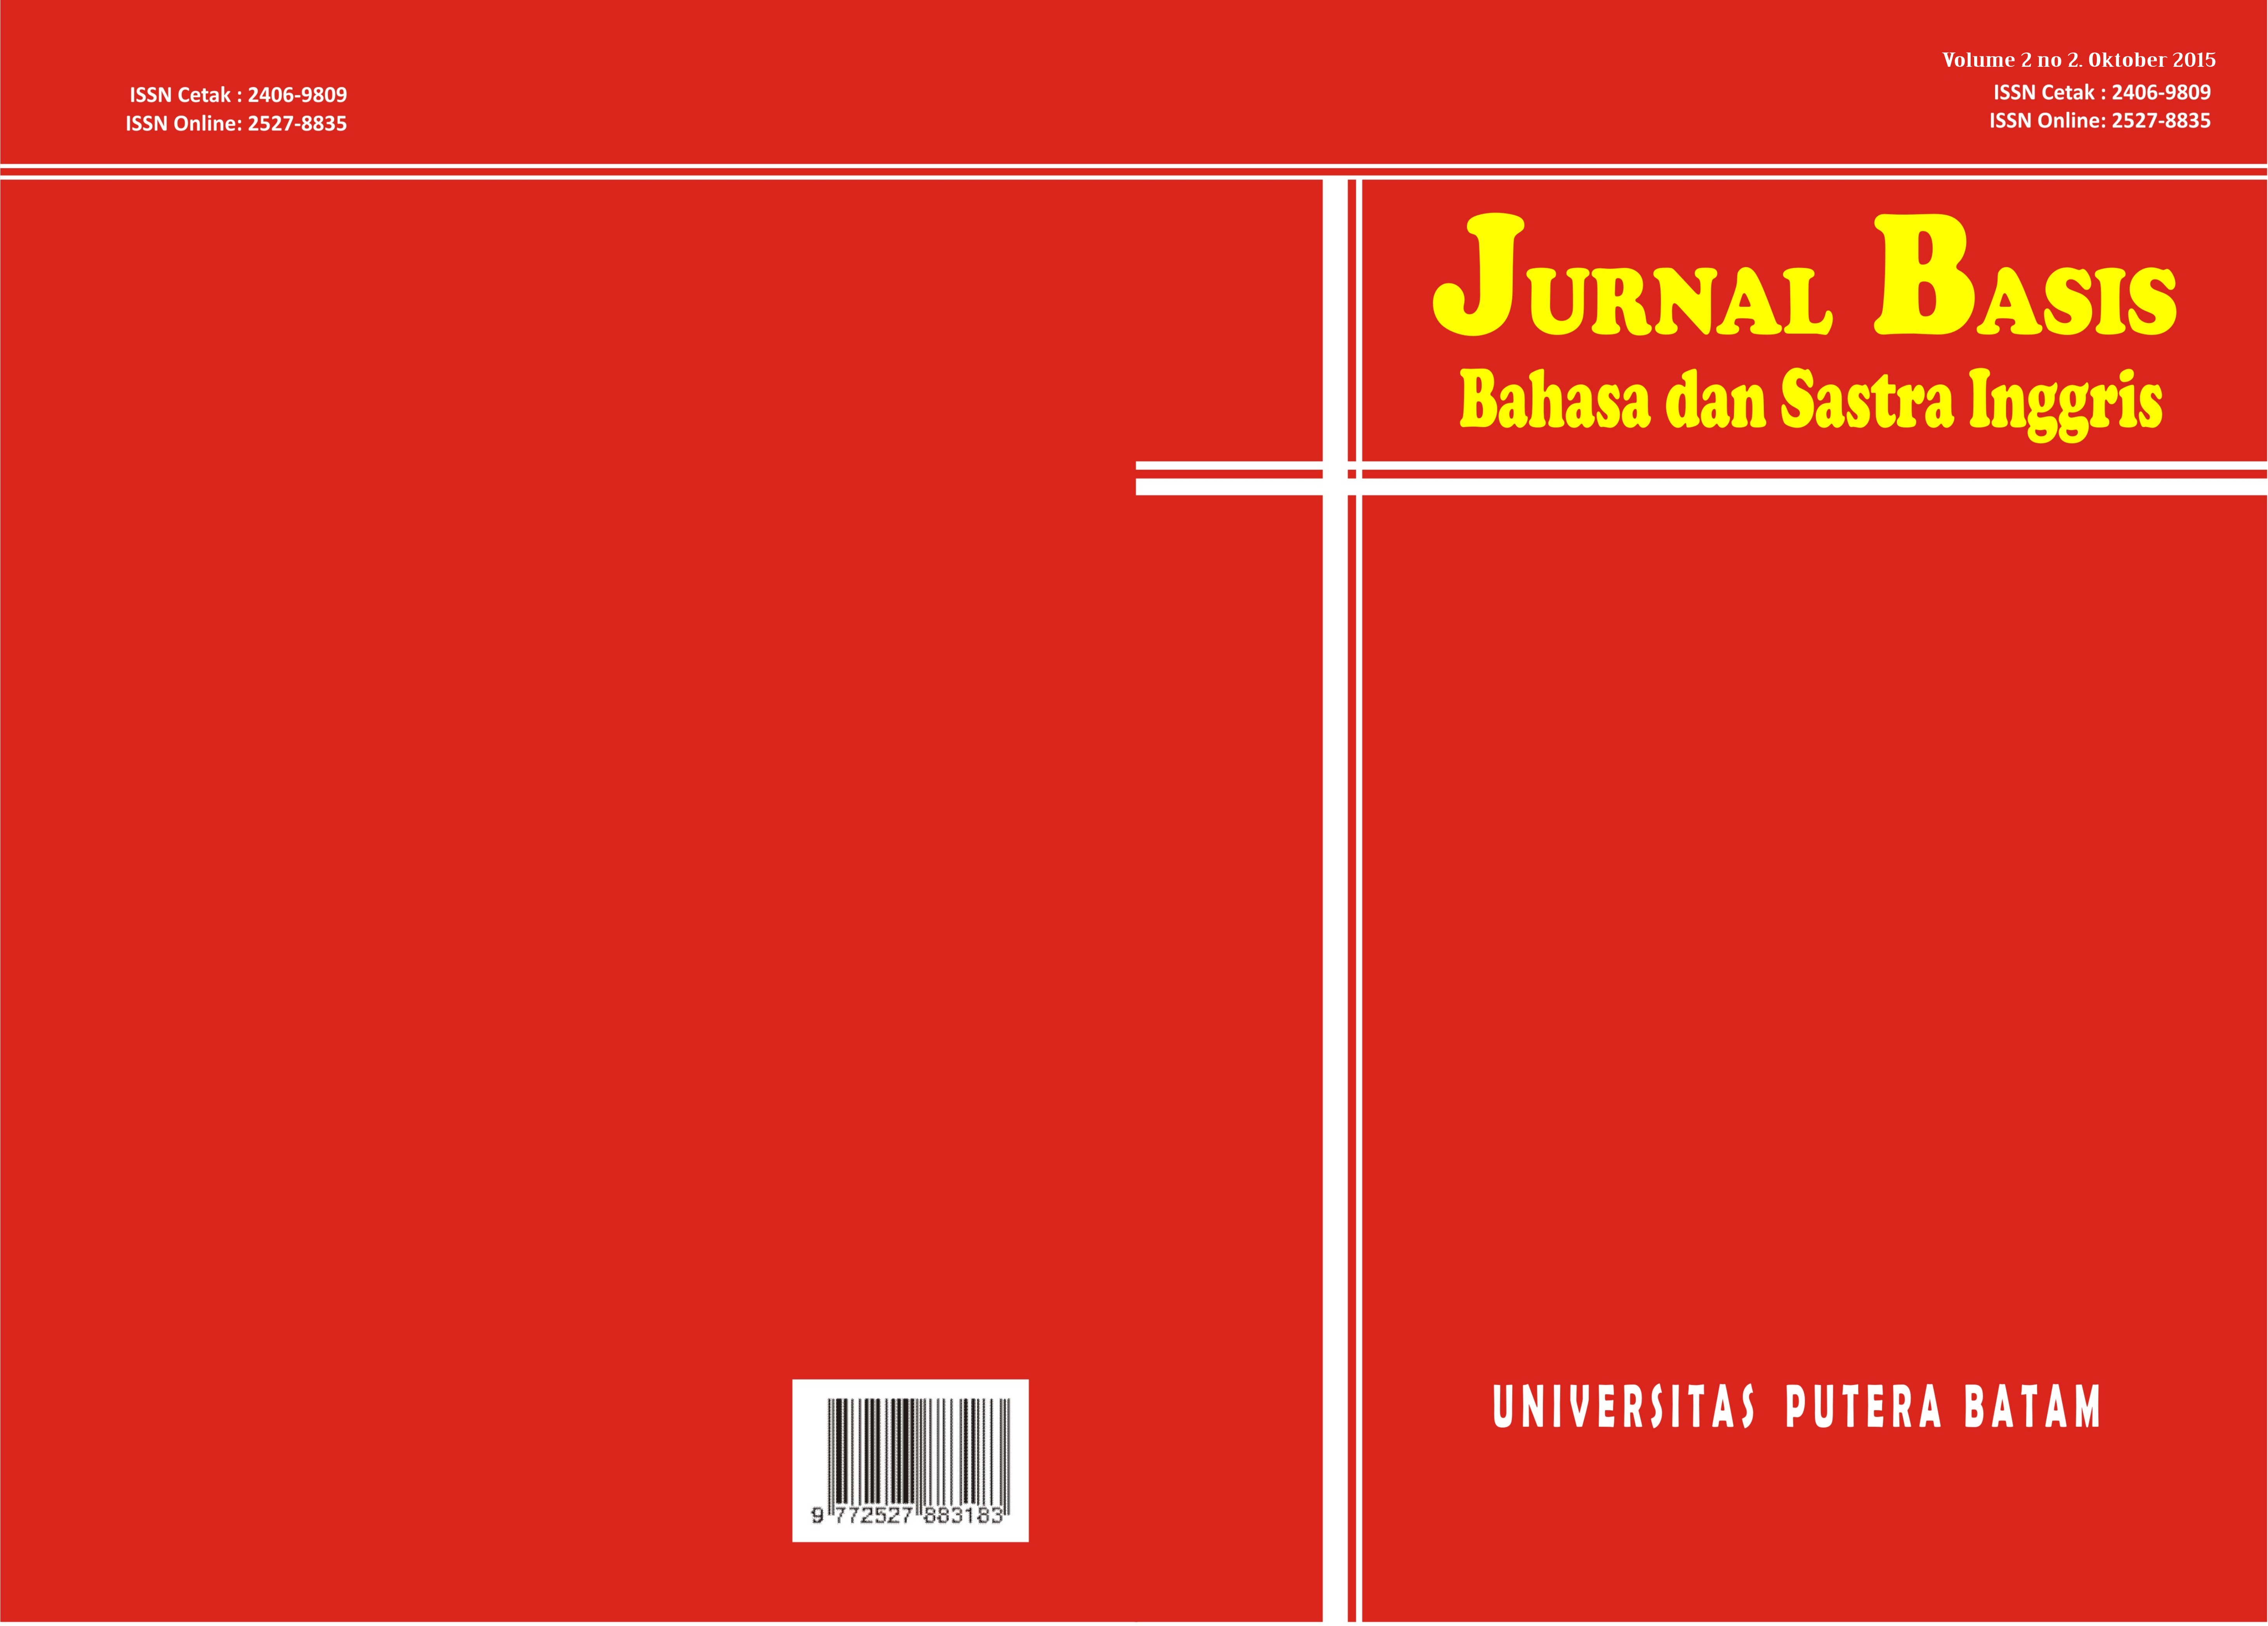 					View Vol. 2 No. 1 (2015): JURNAL BASIS UPB
				